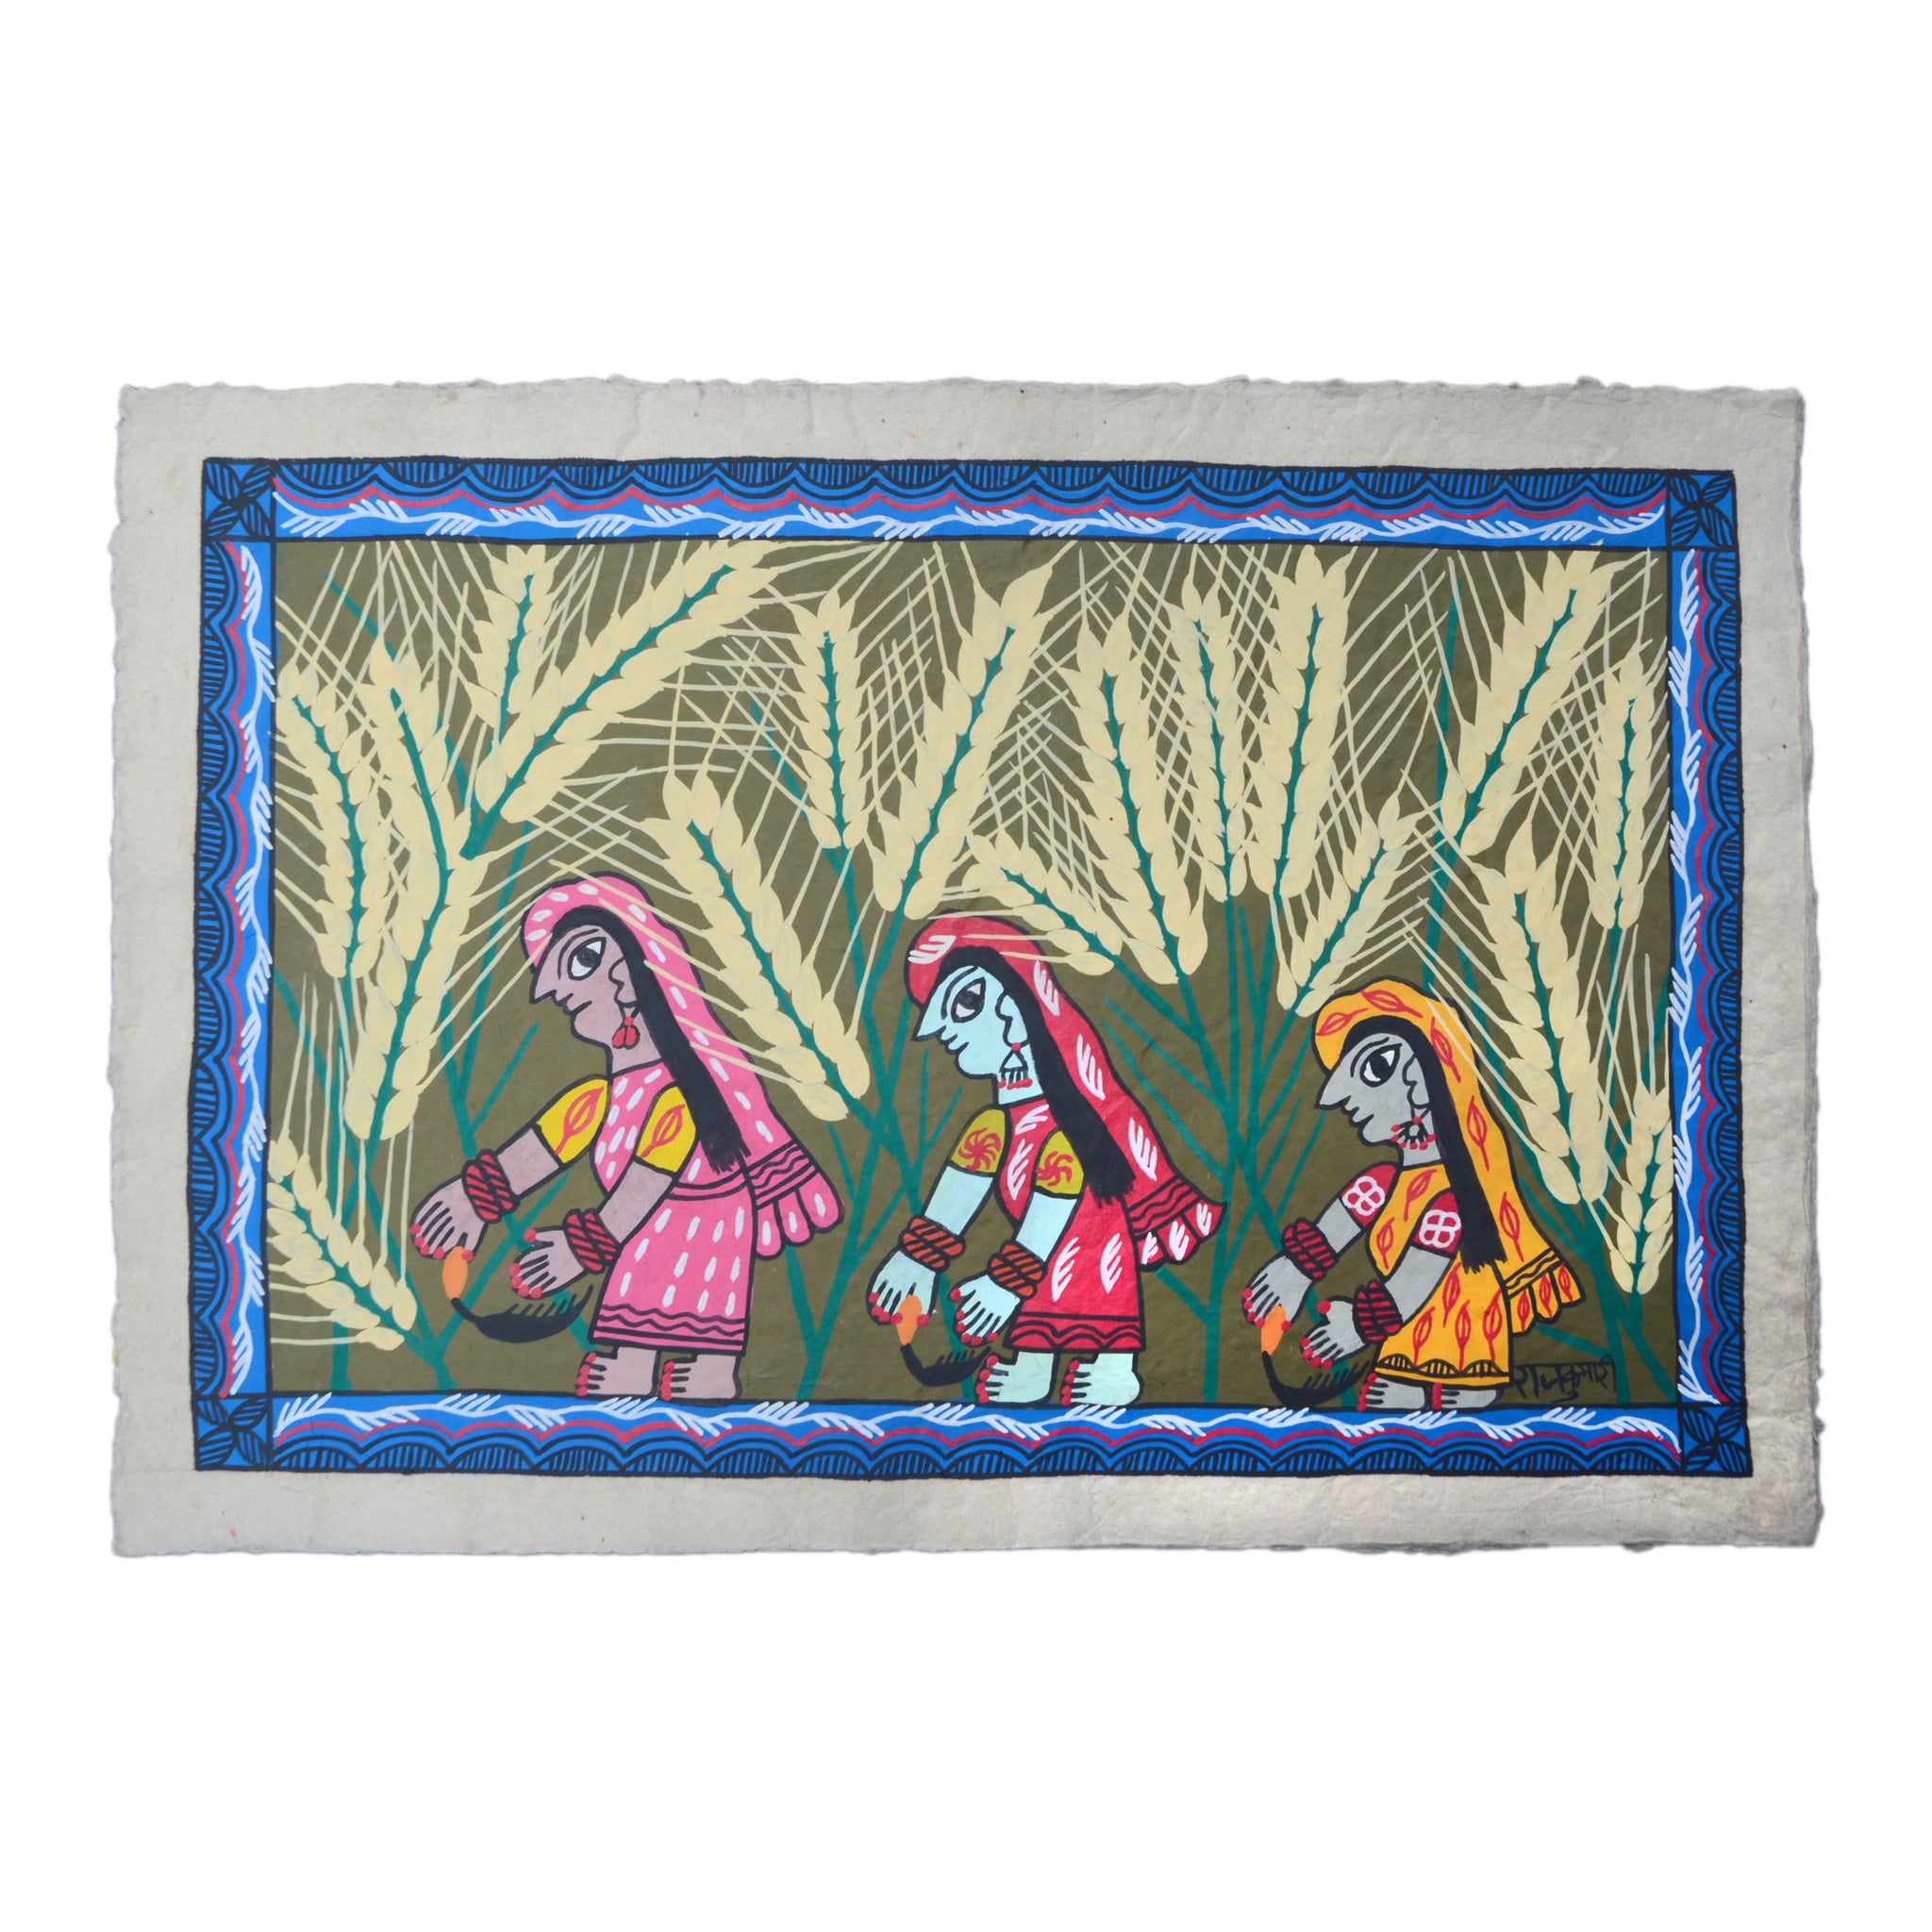 Frauen schneiden Weizen von Rajkumari Mandal